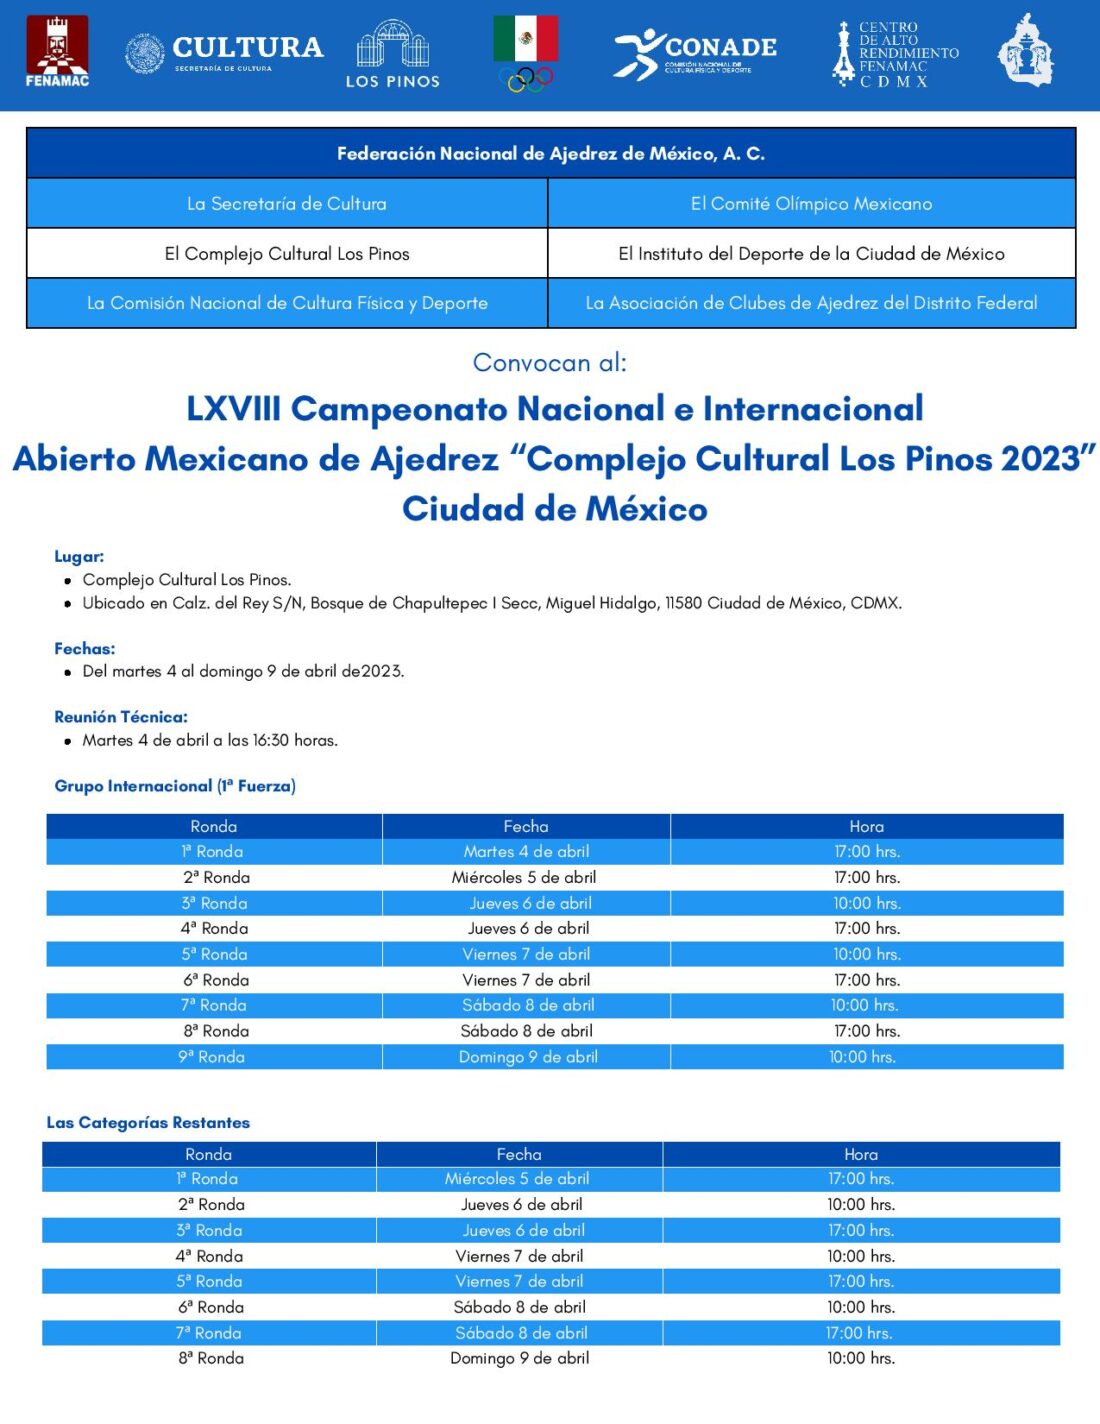 Convocatorio de  LXVIII Campeonato Nacional e Internacional Abierto Mexicano de Ajedrez “Complejo Cultural Los Pinos 2023” Ciudad de México